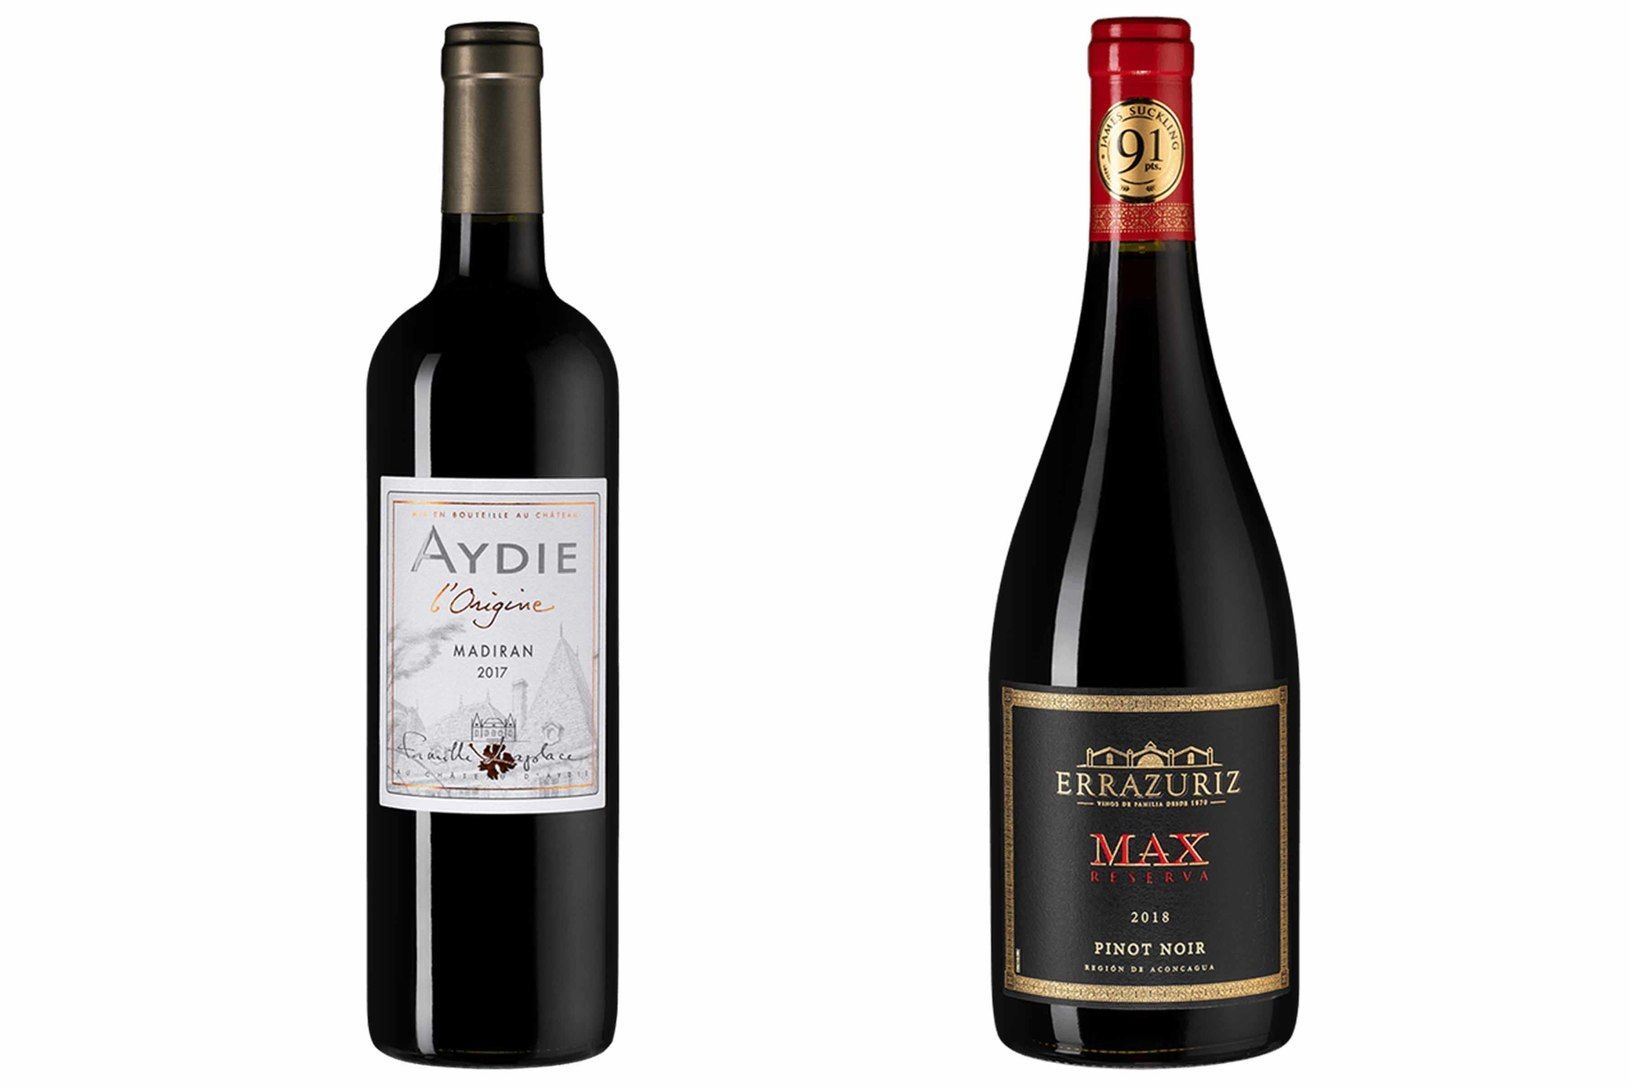 Слева направо: Chateau d'Aydie Aydie l'Origine 2017; Errazuriz Max Reserva Pinot Noir 2018